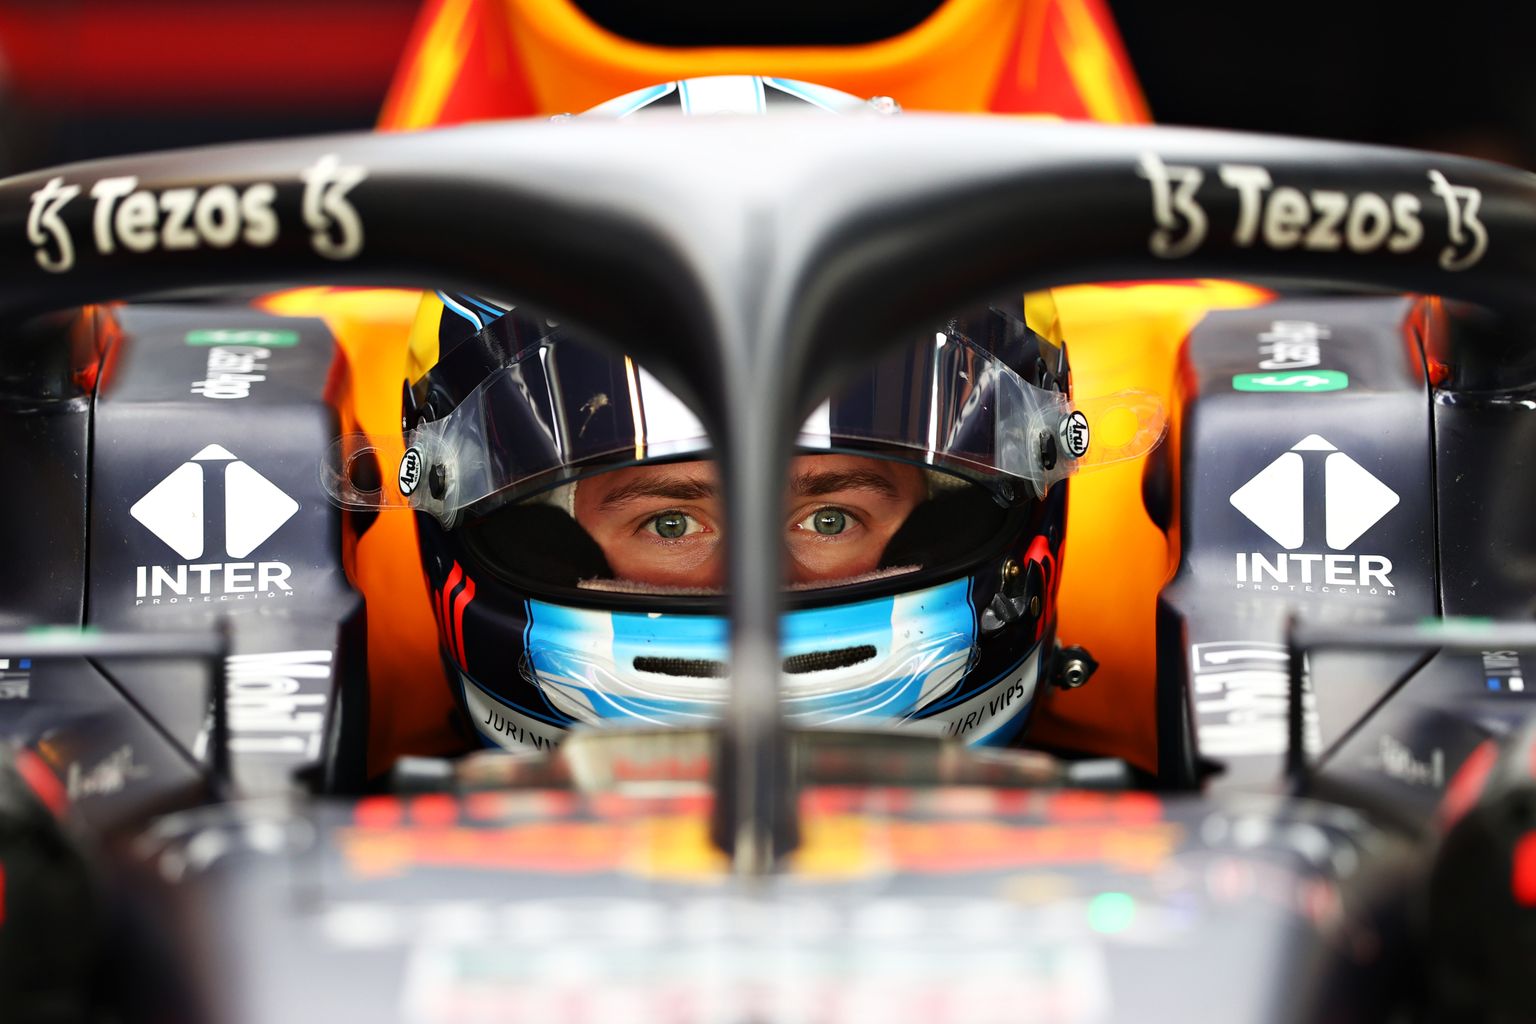 Viimati pääses Jüri Vips F1-auto rooli möödunud hooaja järgsel testil. Nüüd saab ta esmakordselt näidata oma oskusi võistlusnädalavahetuse käigus.